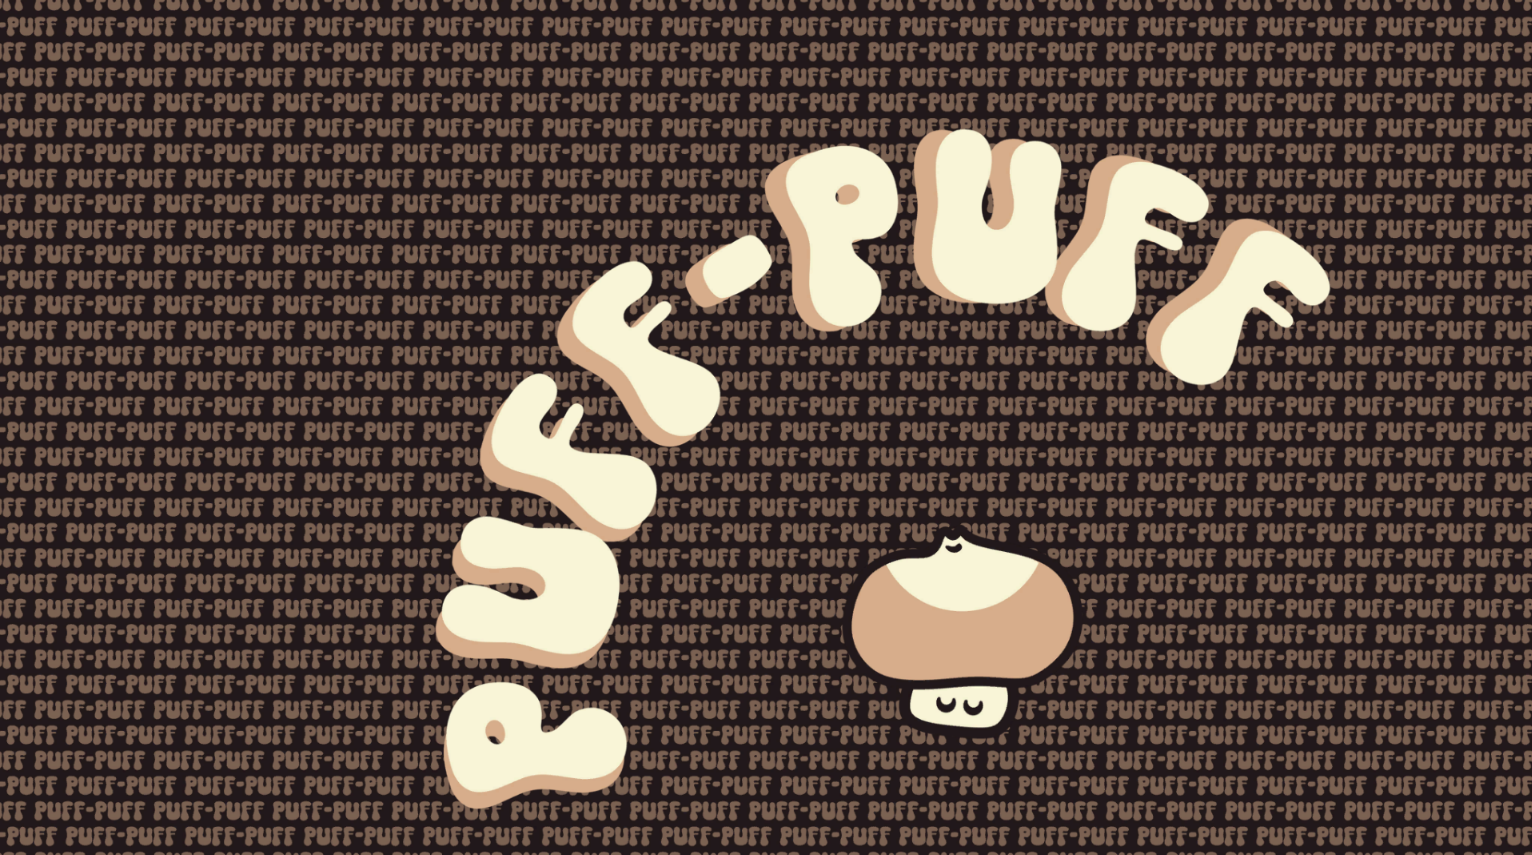 Puff-Puff